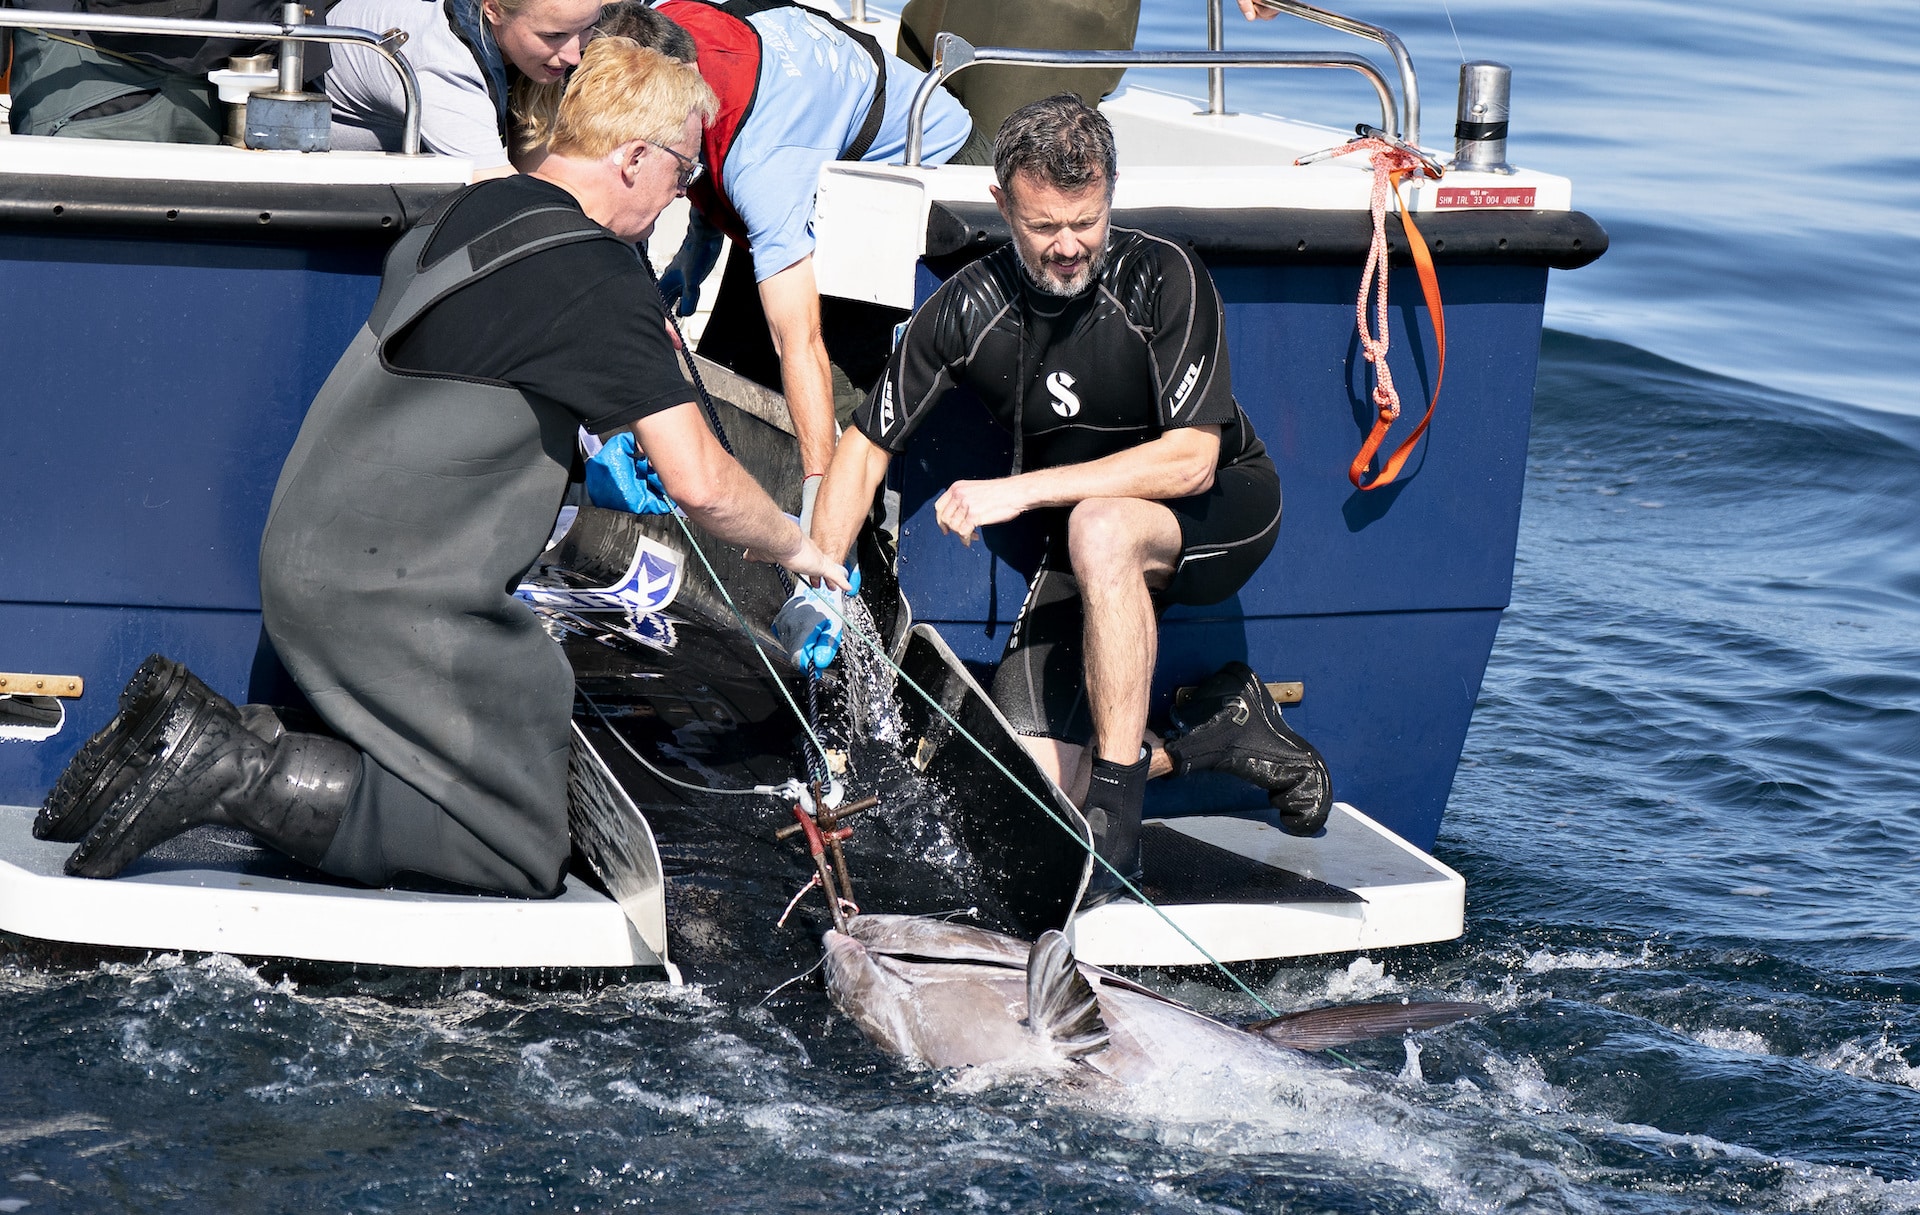 Kronprinz Frederik hilft den Thunfischen – News Royals